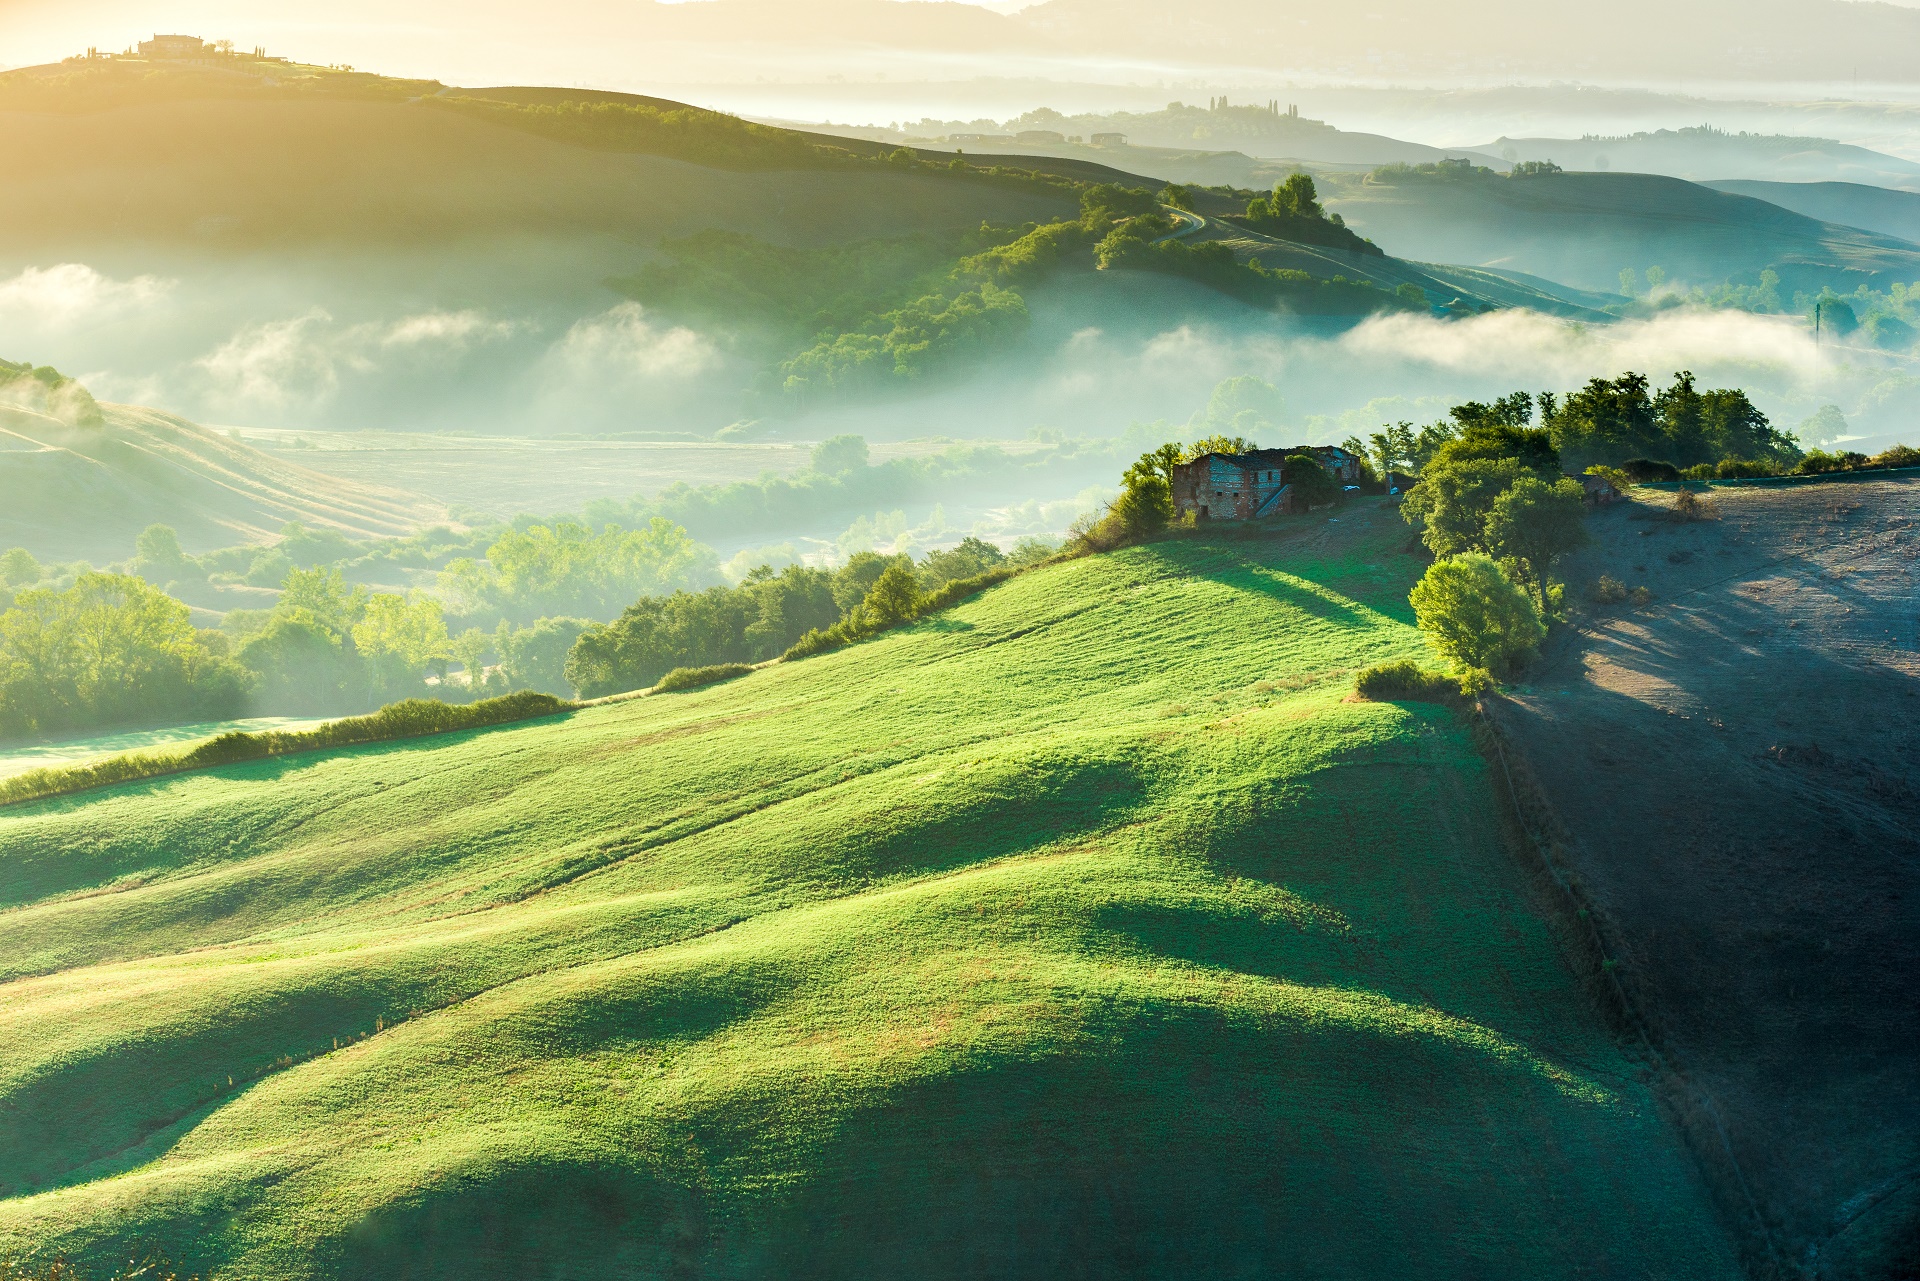 Tuscany HD Wallpaper - Tuscany Hình nền HD Bạn muốn khám phá vẻ đẹp tuyệt vời của Tuscany? Hãy xem ngay hình nền HD của chúng tôi! Ảnh sắc nét, chất lượng cao, giúp bạn tận hưởng những khoảnh khắc tuyệt vời của vùng đất nổi tiếng này. Sẽ không bao giờ làm bạn thất vọng!